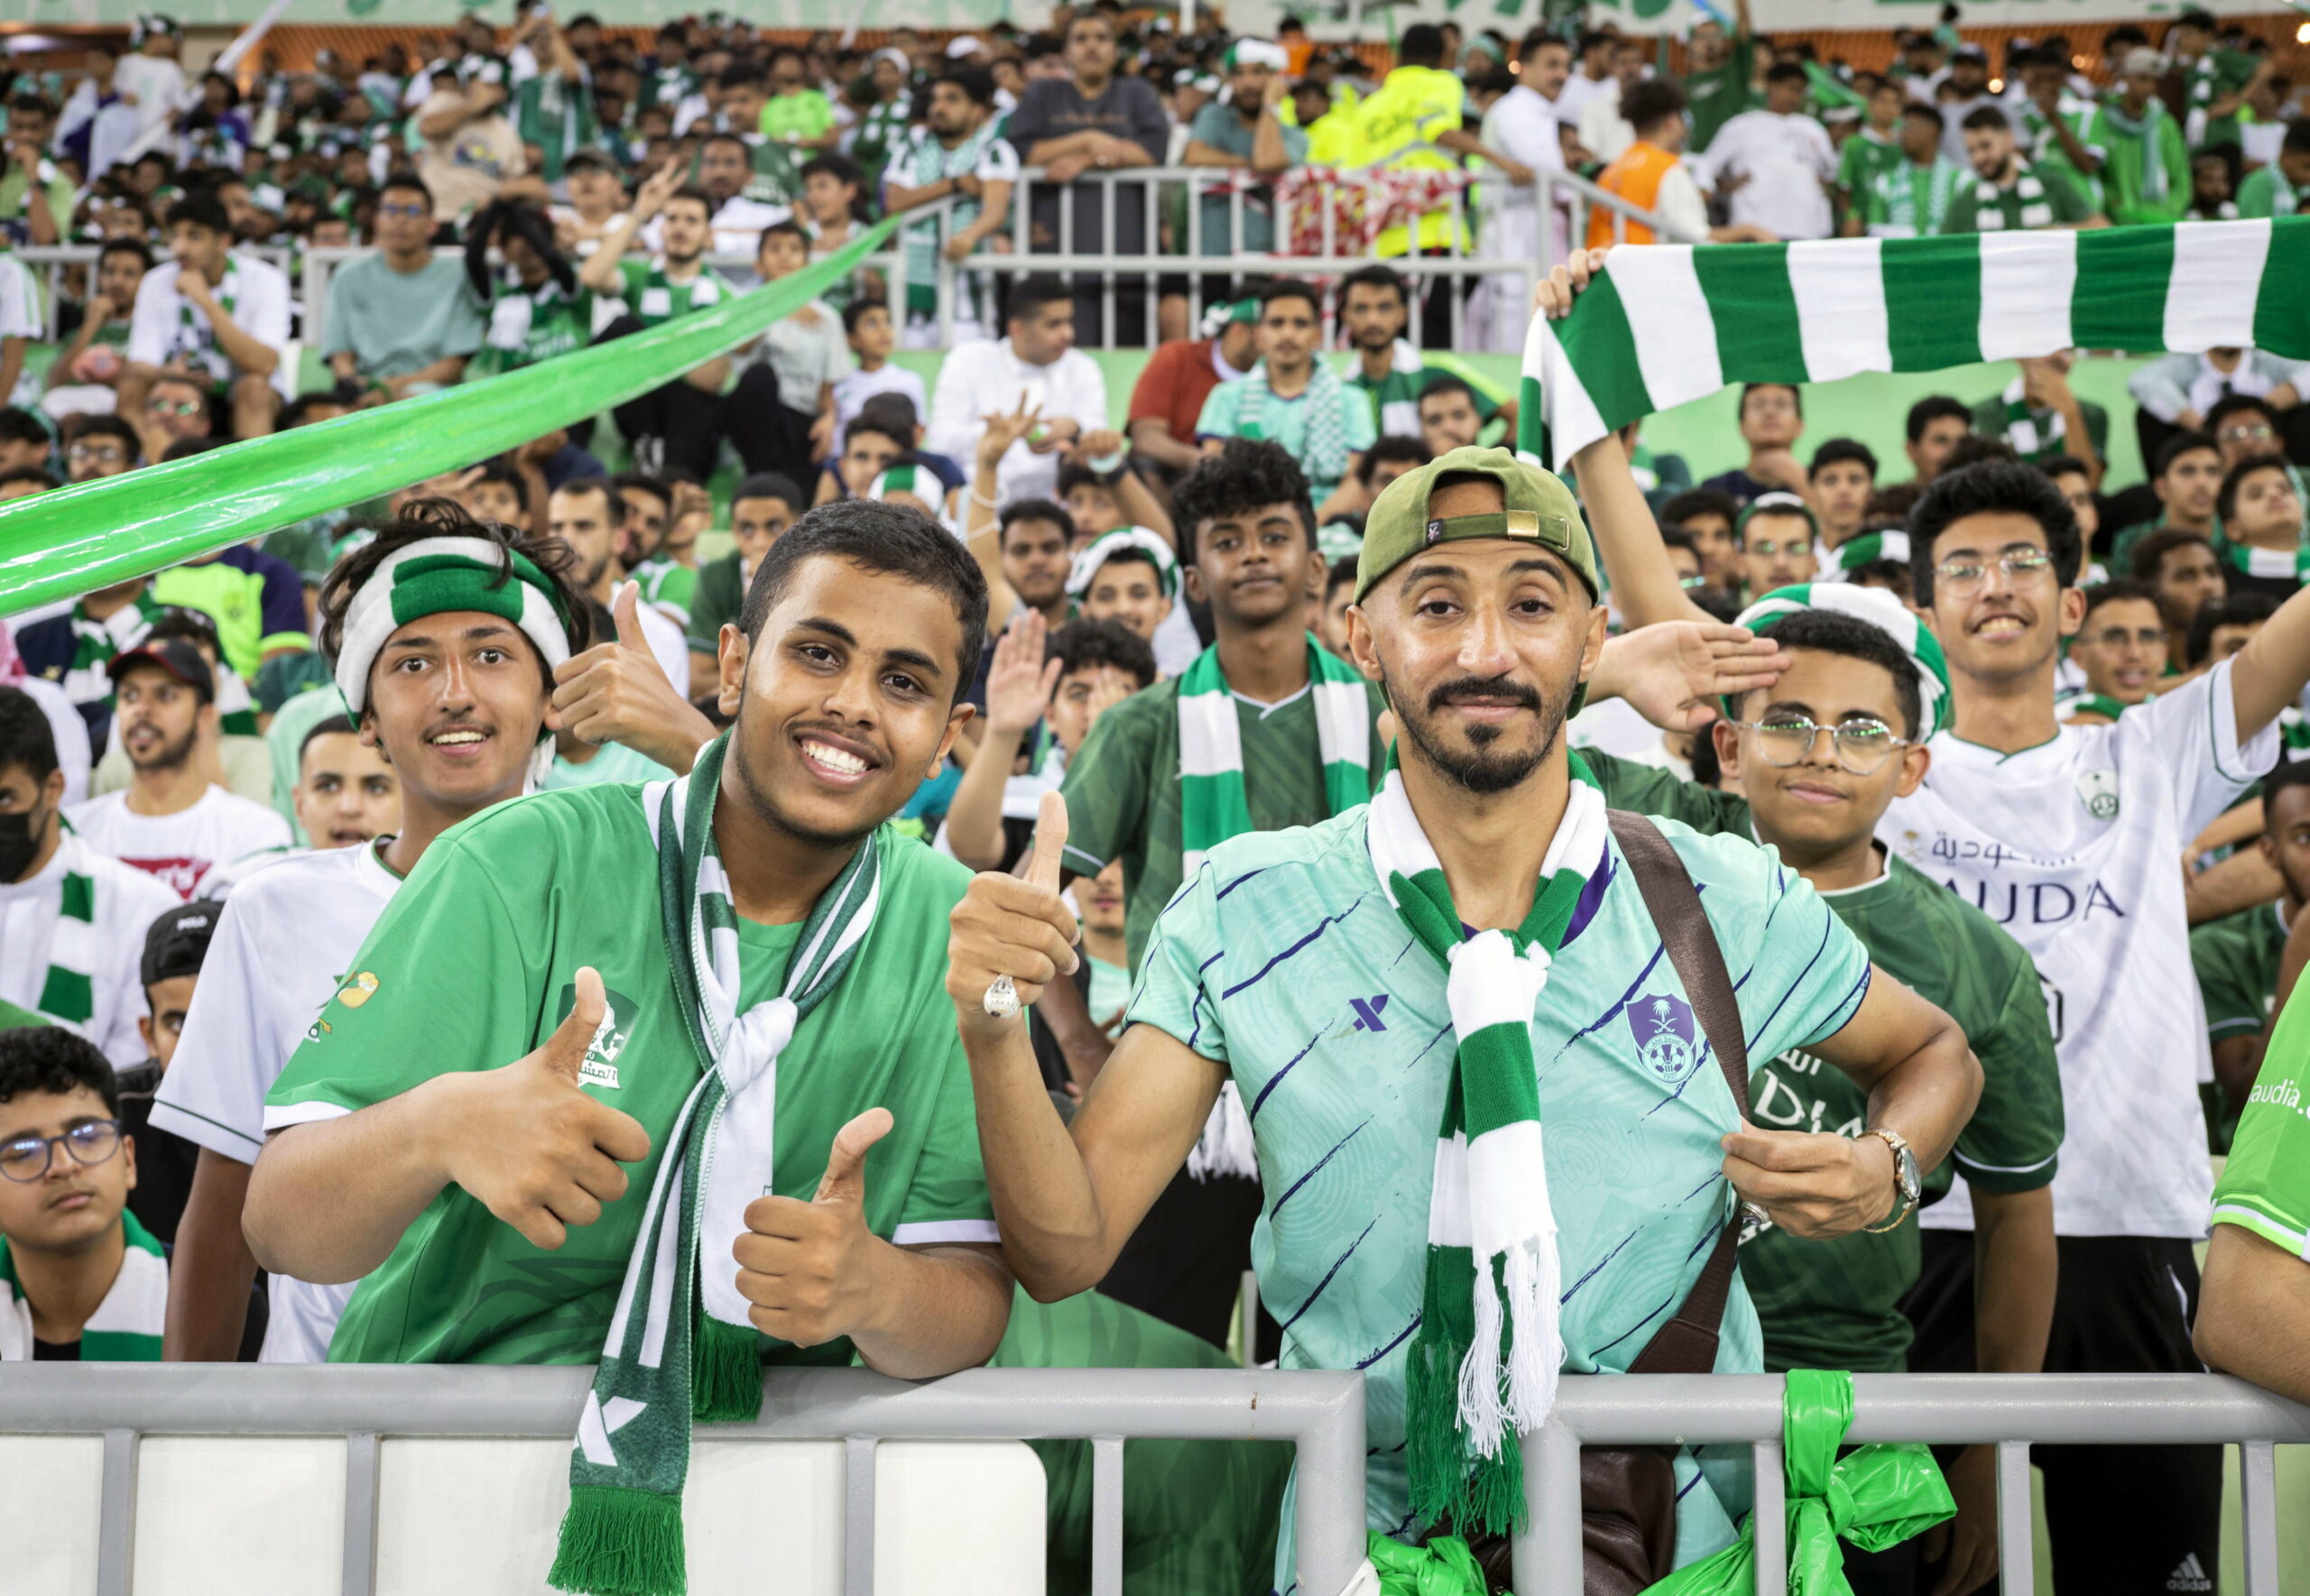 Fußball-Fans in Saudi-Arabien